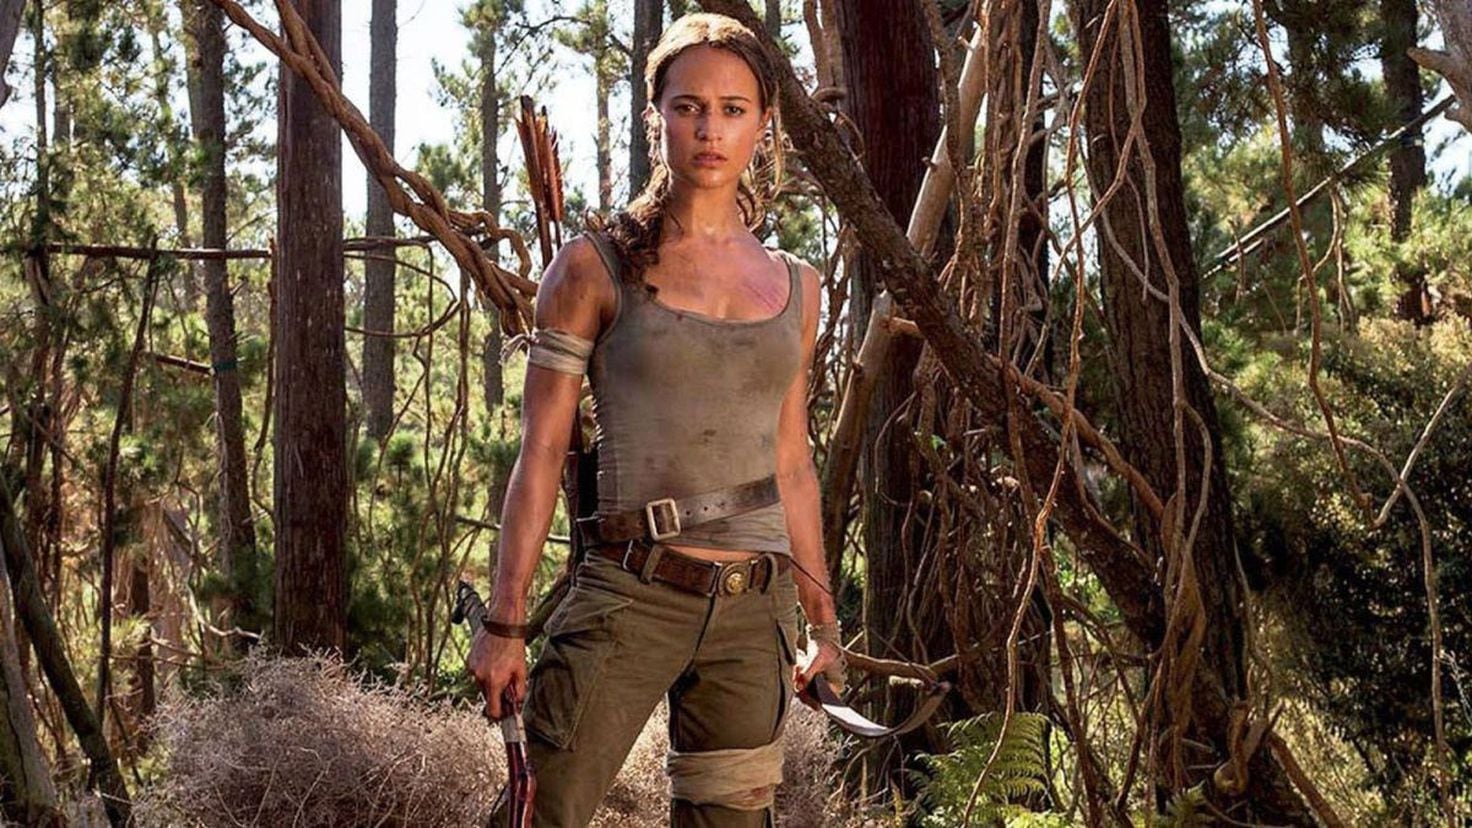 Alicia Vikander out as Lara Croft after MGM loses Tomb Raider movie rights